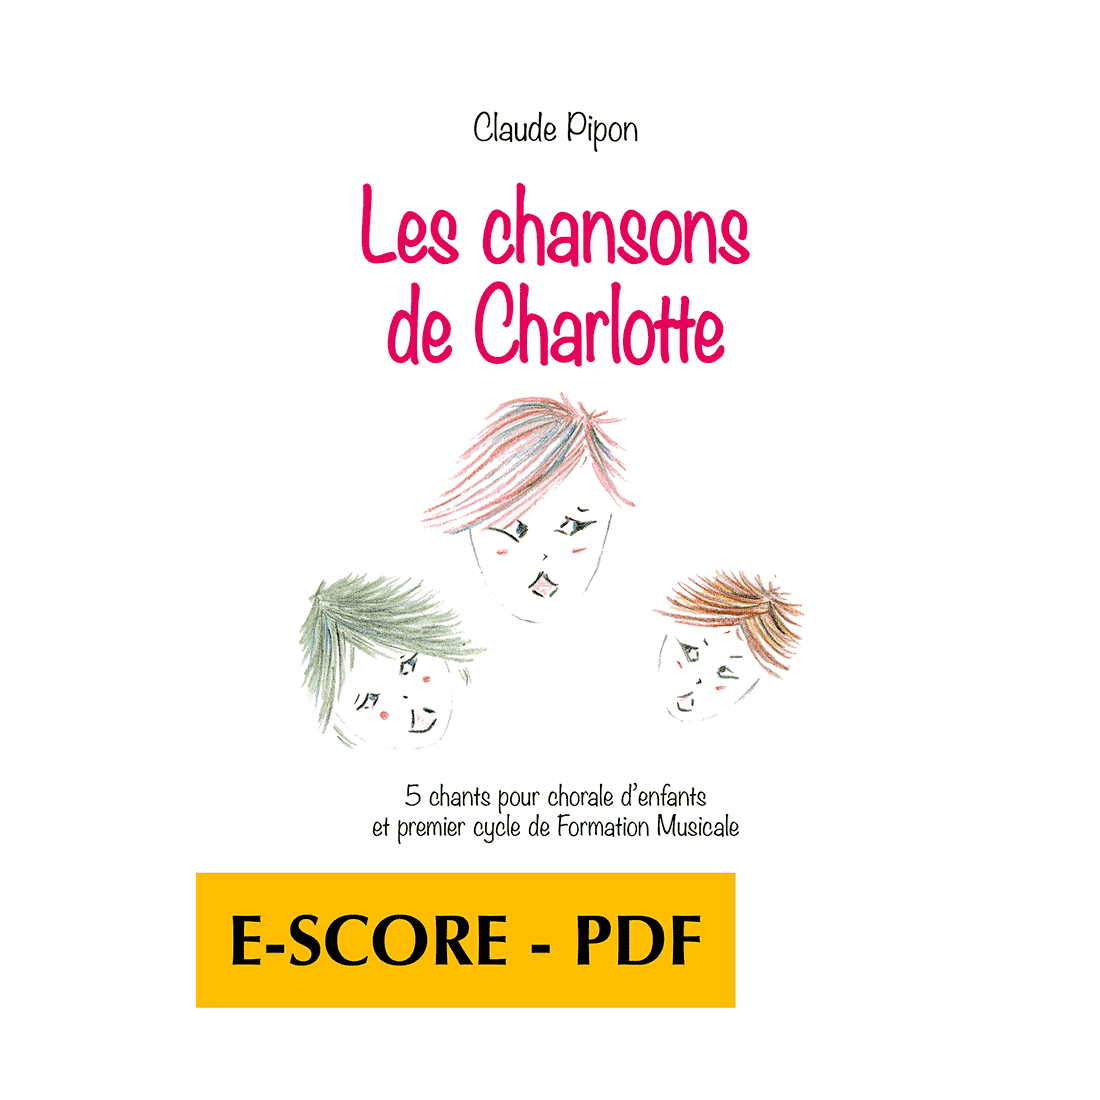 Les chansons de Charlotte - 5 chants pour chorale d'enfants et 1er cycle de Formation Musicale - E-score PDF